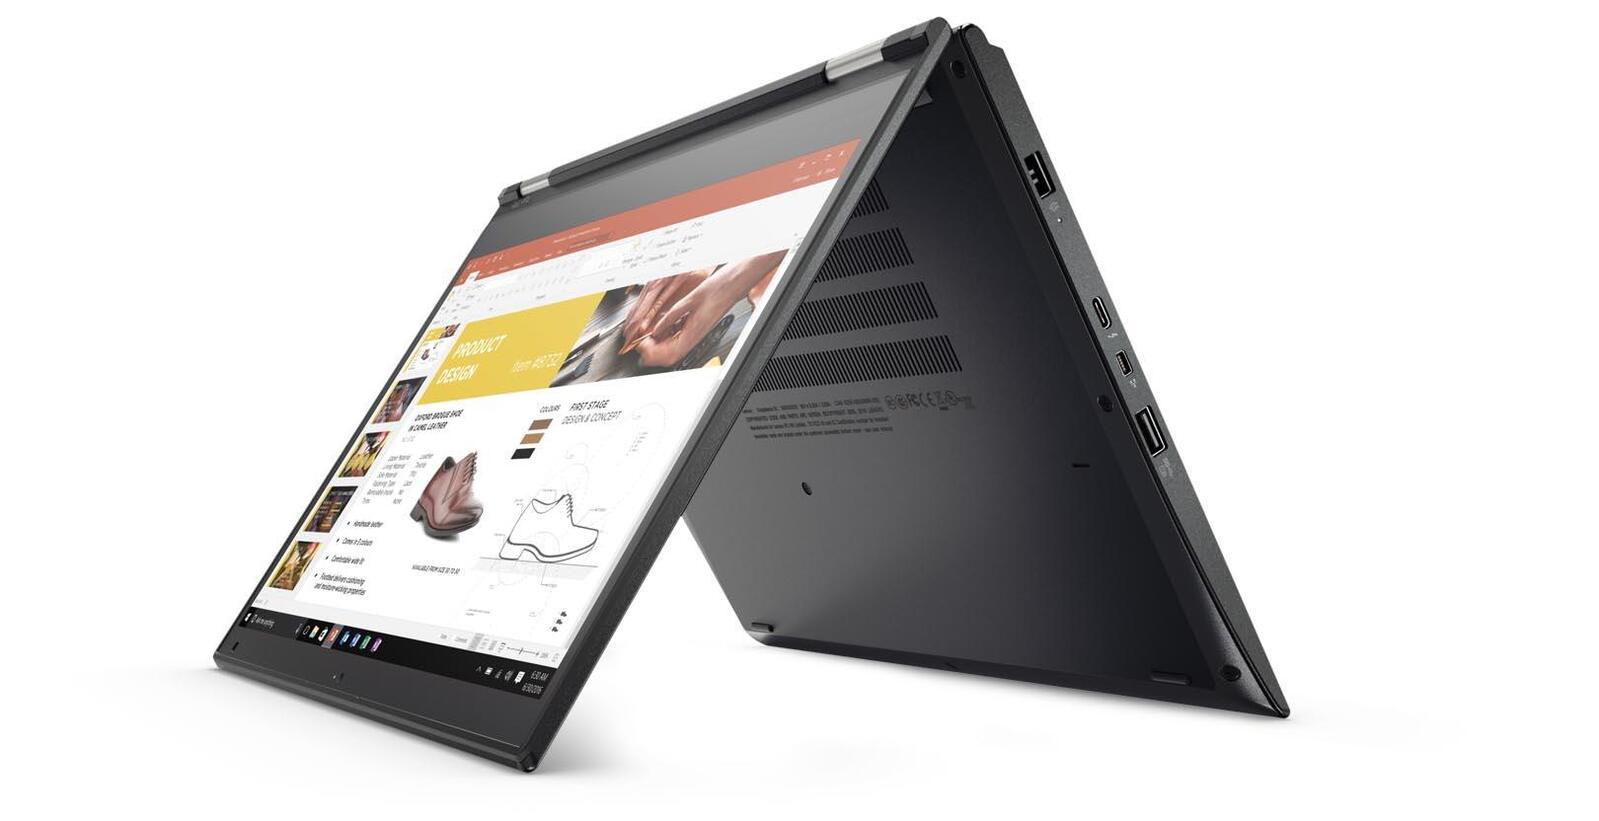 Lenovo ThinkPad Yoga 370 Intel i5 7300u 2.60Ghz 8GB 256GB SSD 13.3" FHD Touch Win 10 Image 2